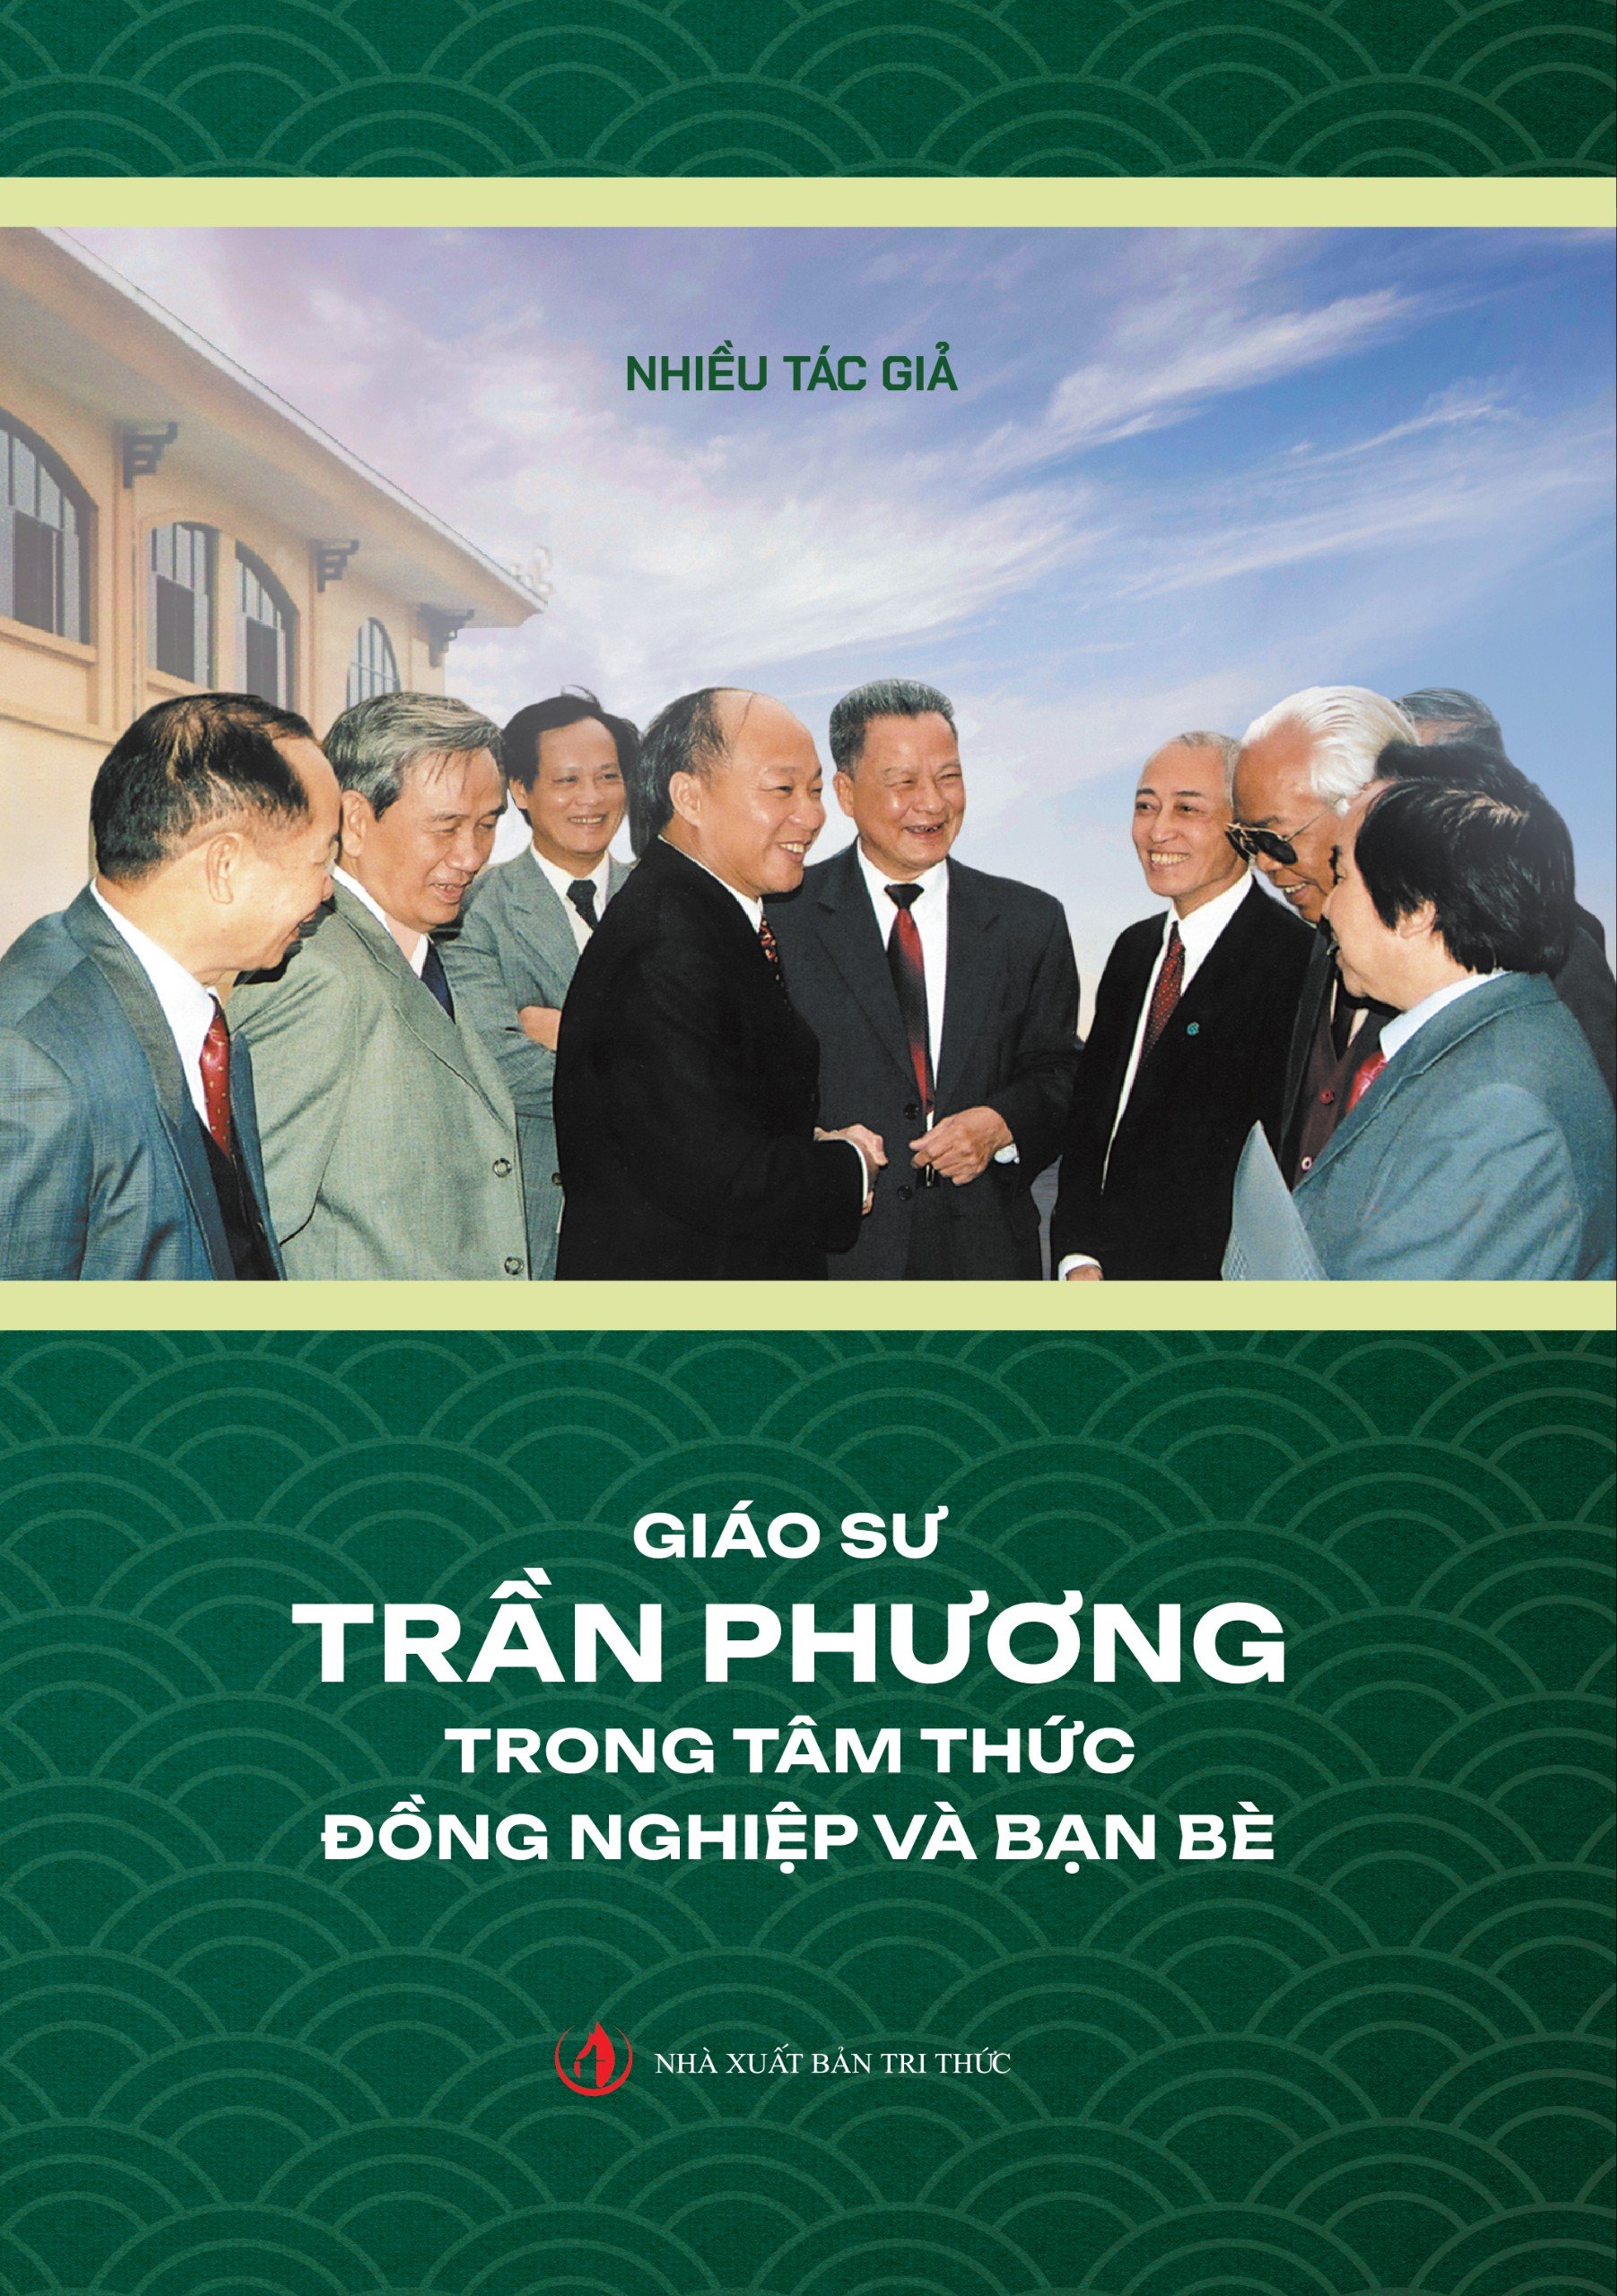 Giáo sư Trần Phương trong tâm thức đồng nghiệp và bạn bè  
